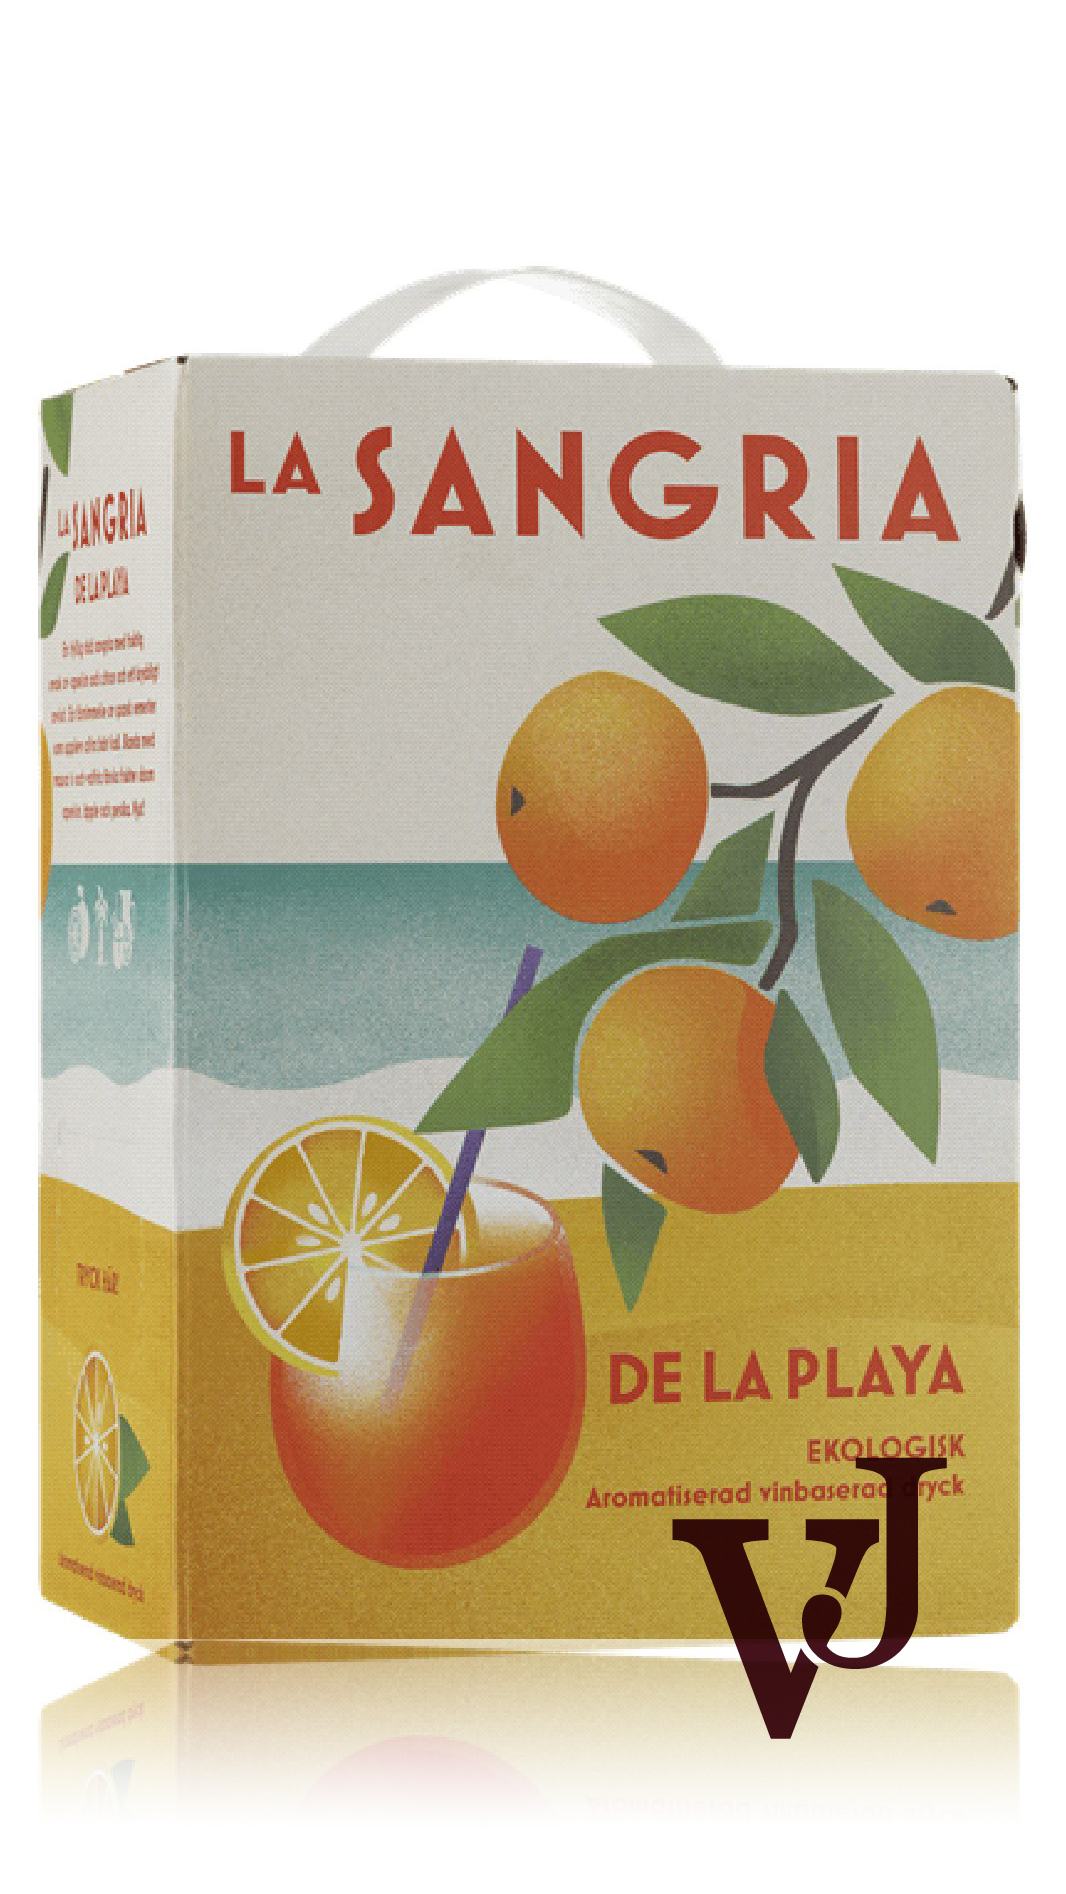 Smaksatt Vin & fruktvin - La Sangria de la Playa artikel nummer 1305007 från producenten Anora Group PLC från området Finland